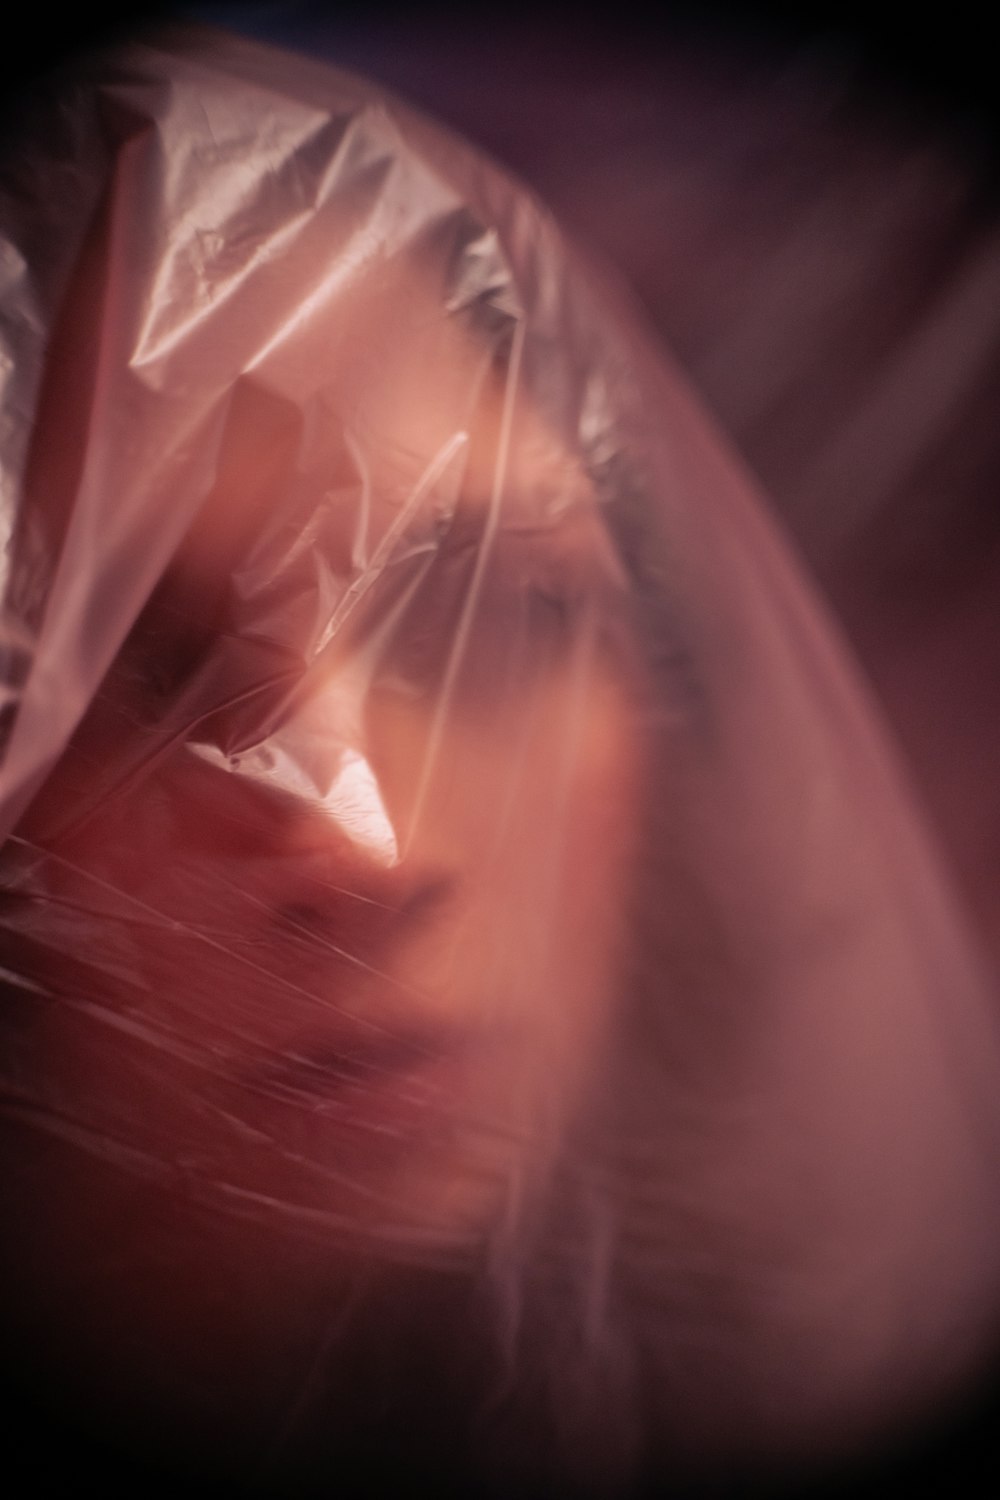 una foto sfocata del volto di una donna con una plastica che le copre la testa